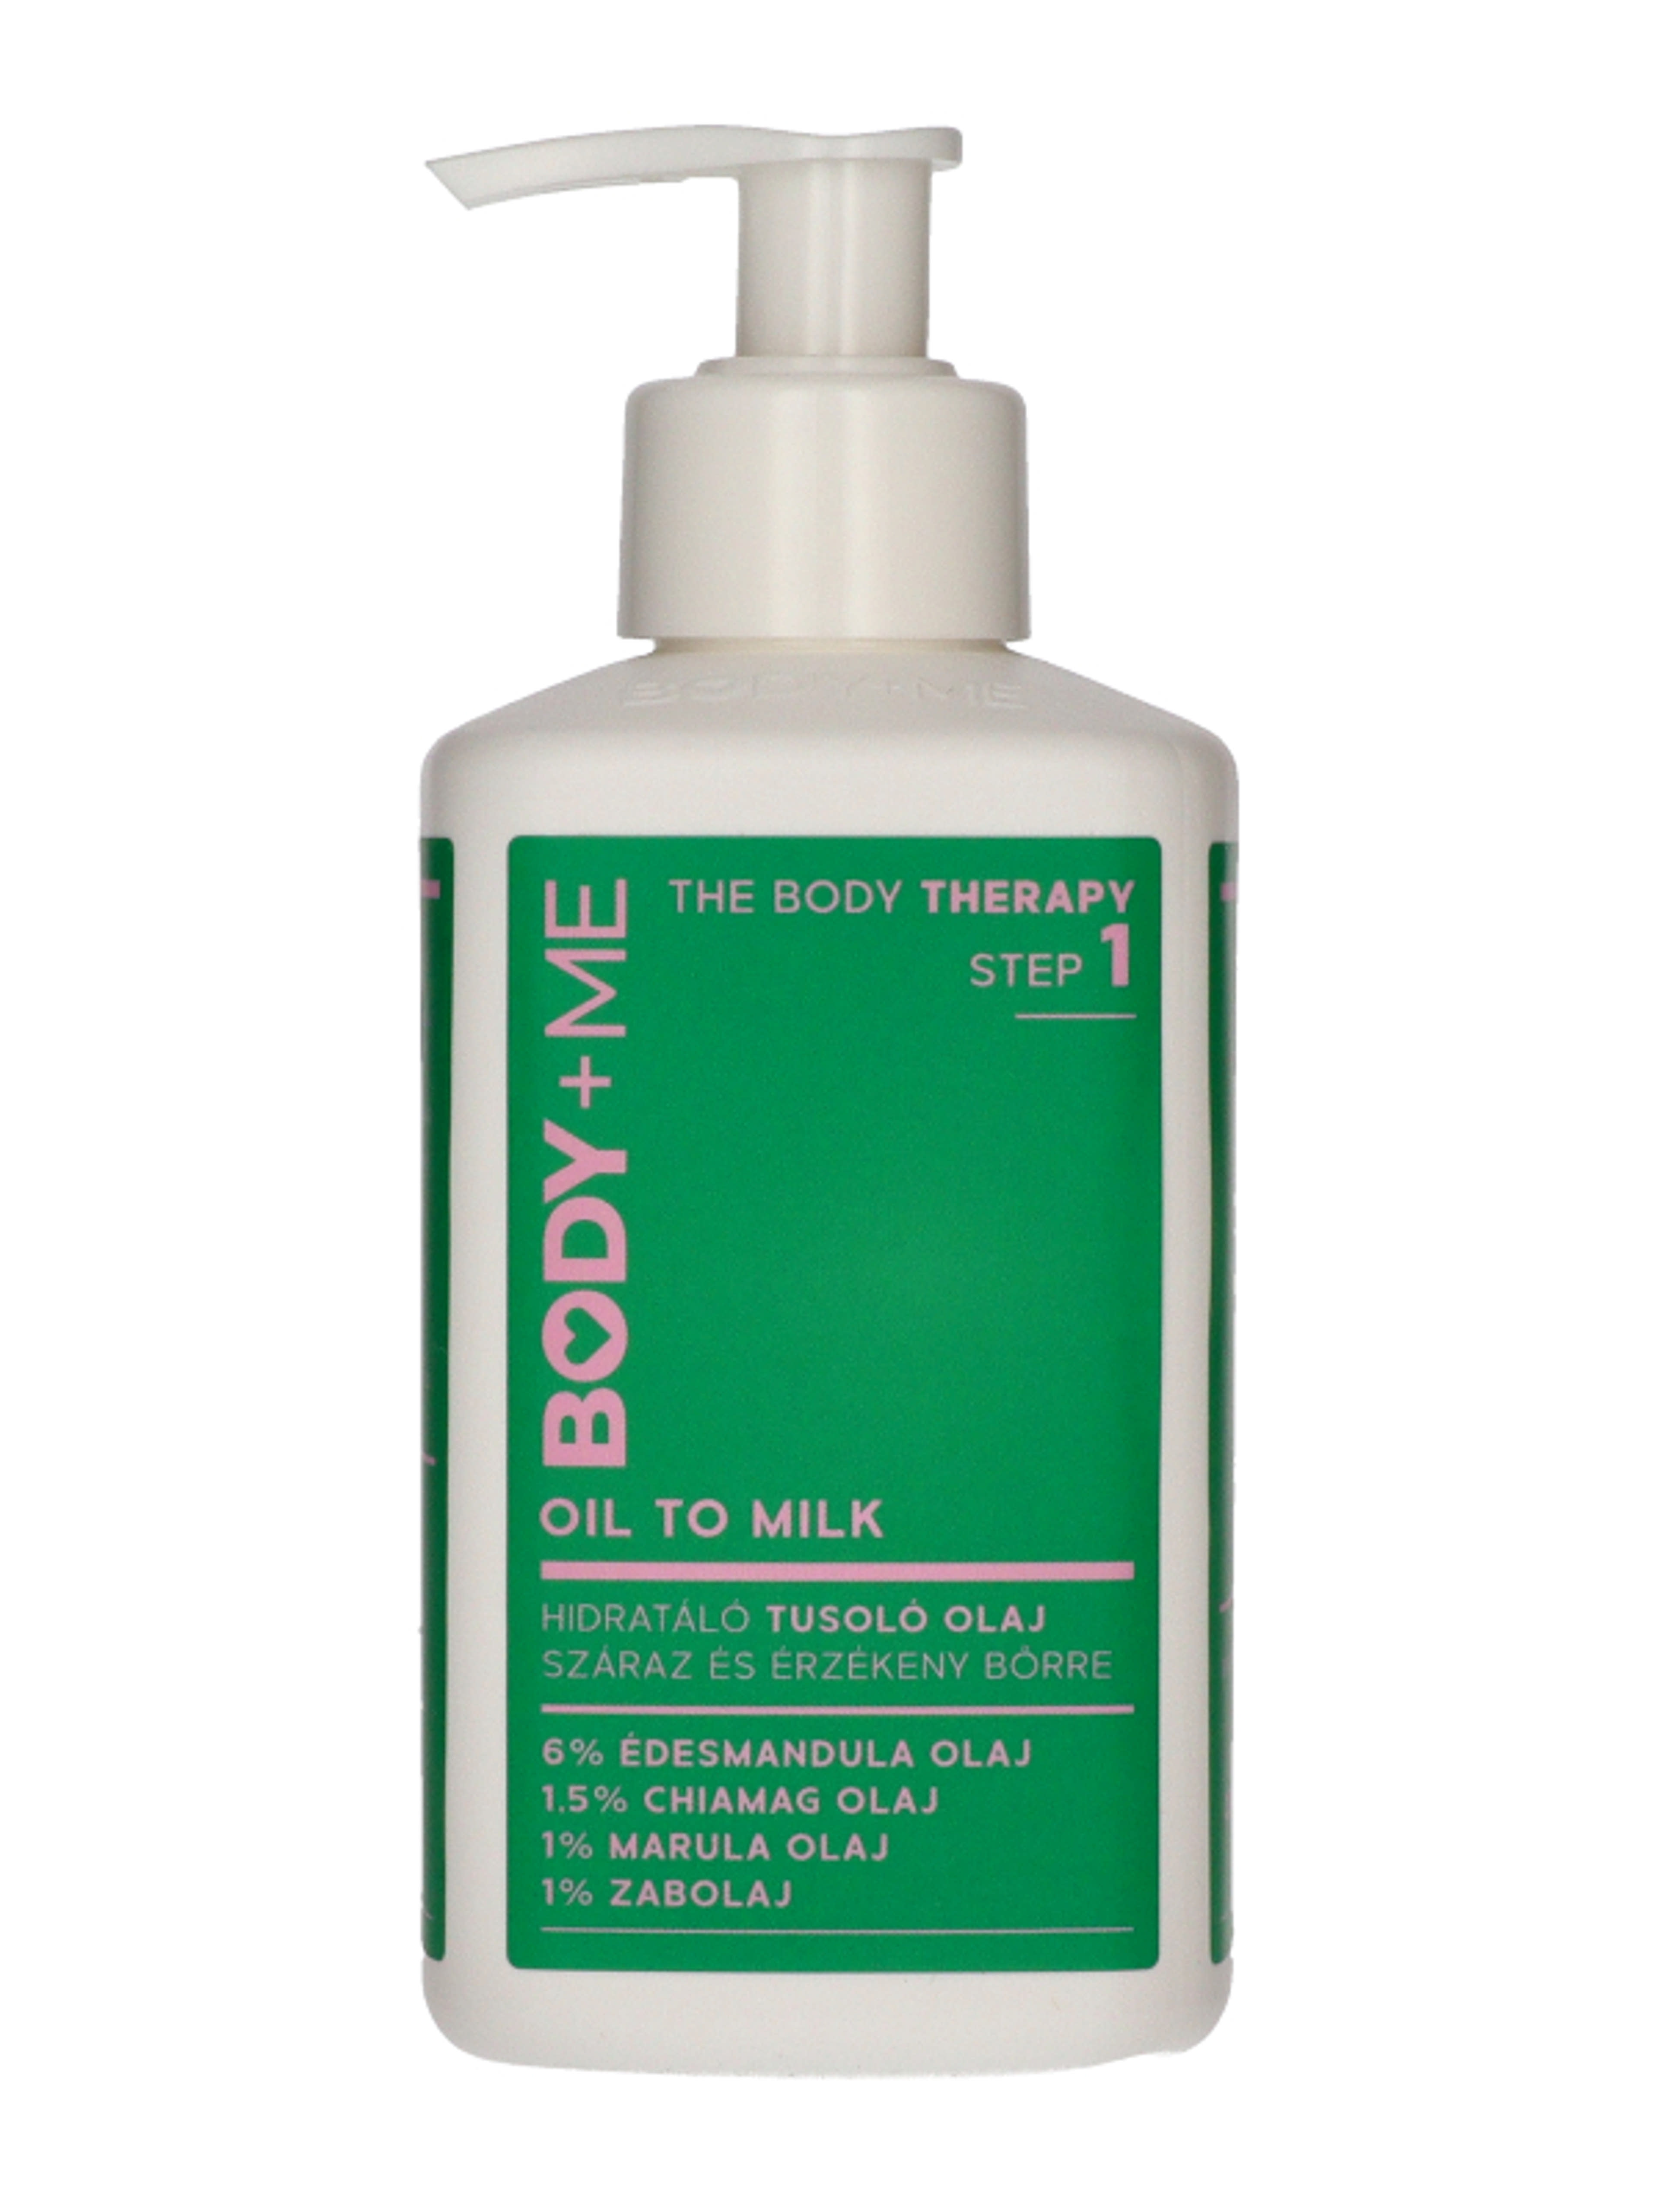 Body + Me Oil to Milk tusoló olaj - 300 ml-2